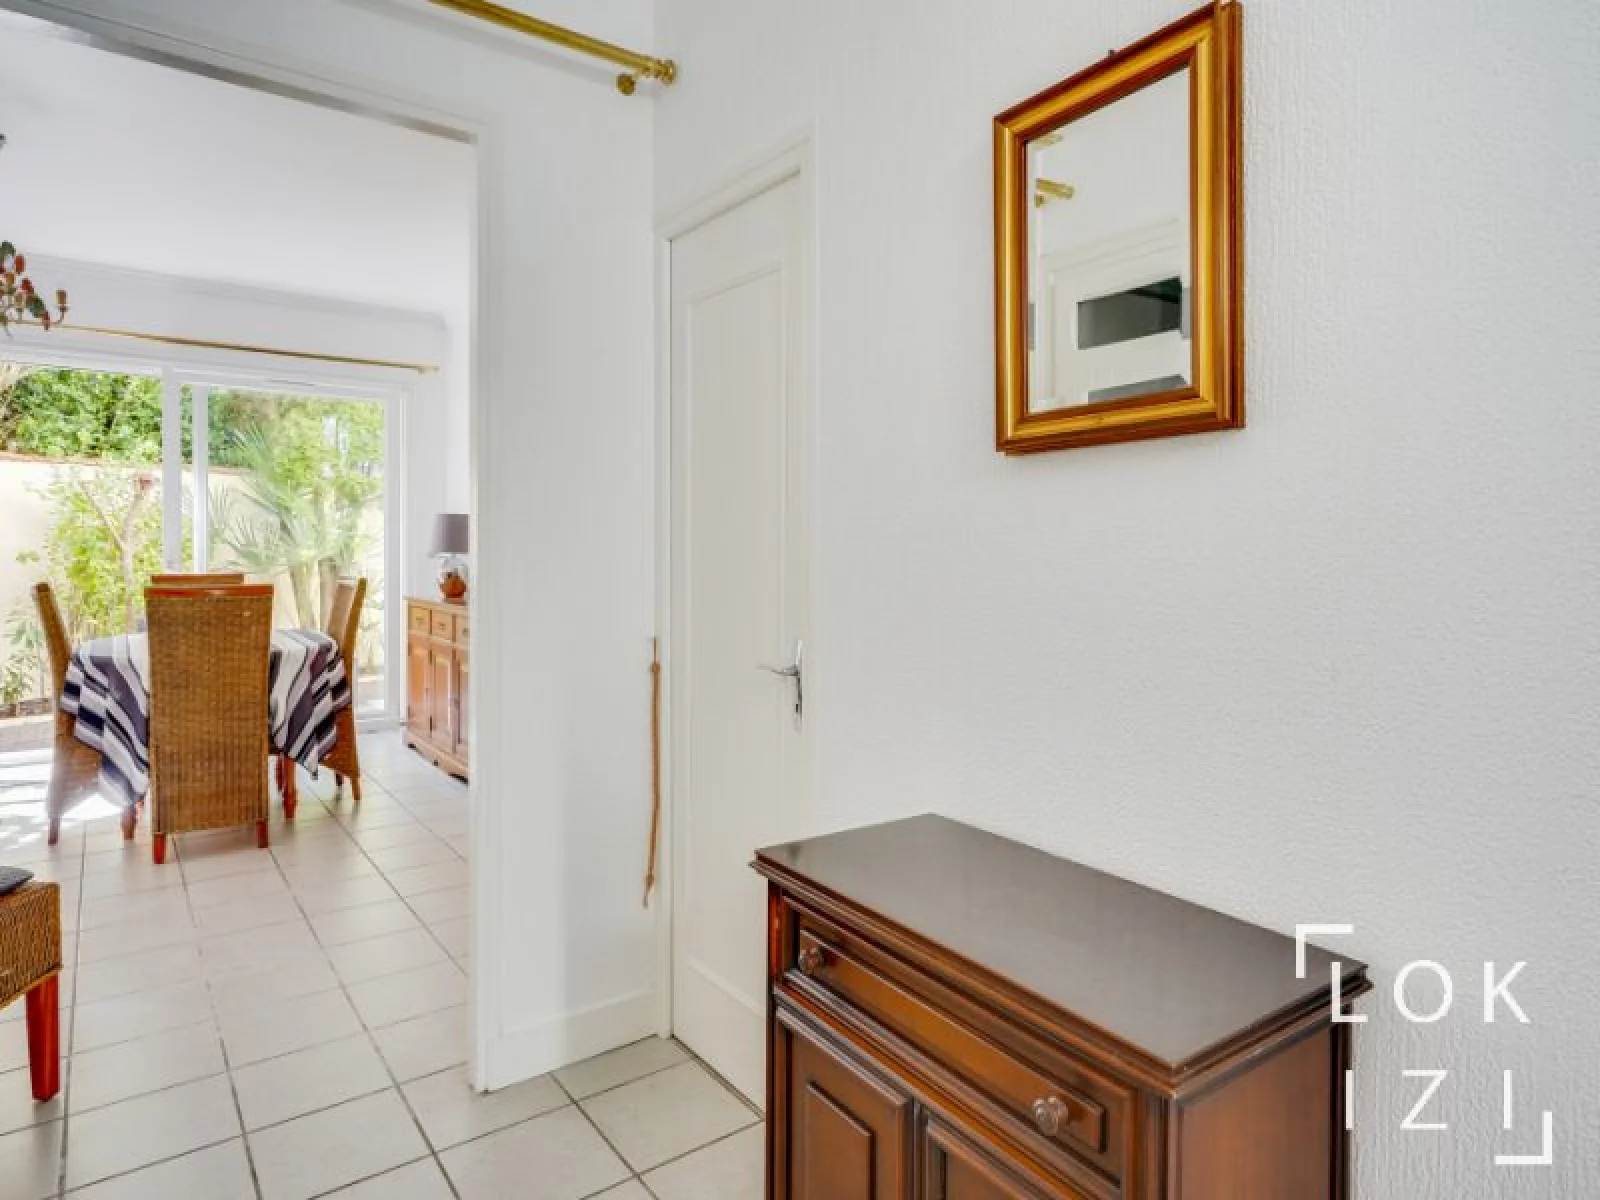 Location appartement meublé 2 pièces 56m² (Bordeaux - Chartrons)